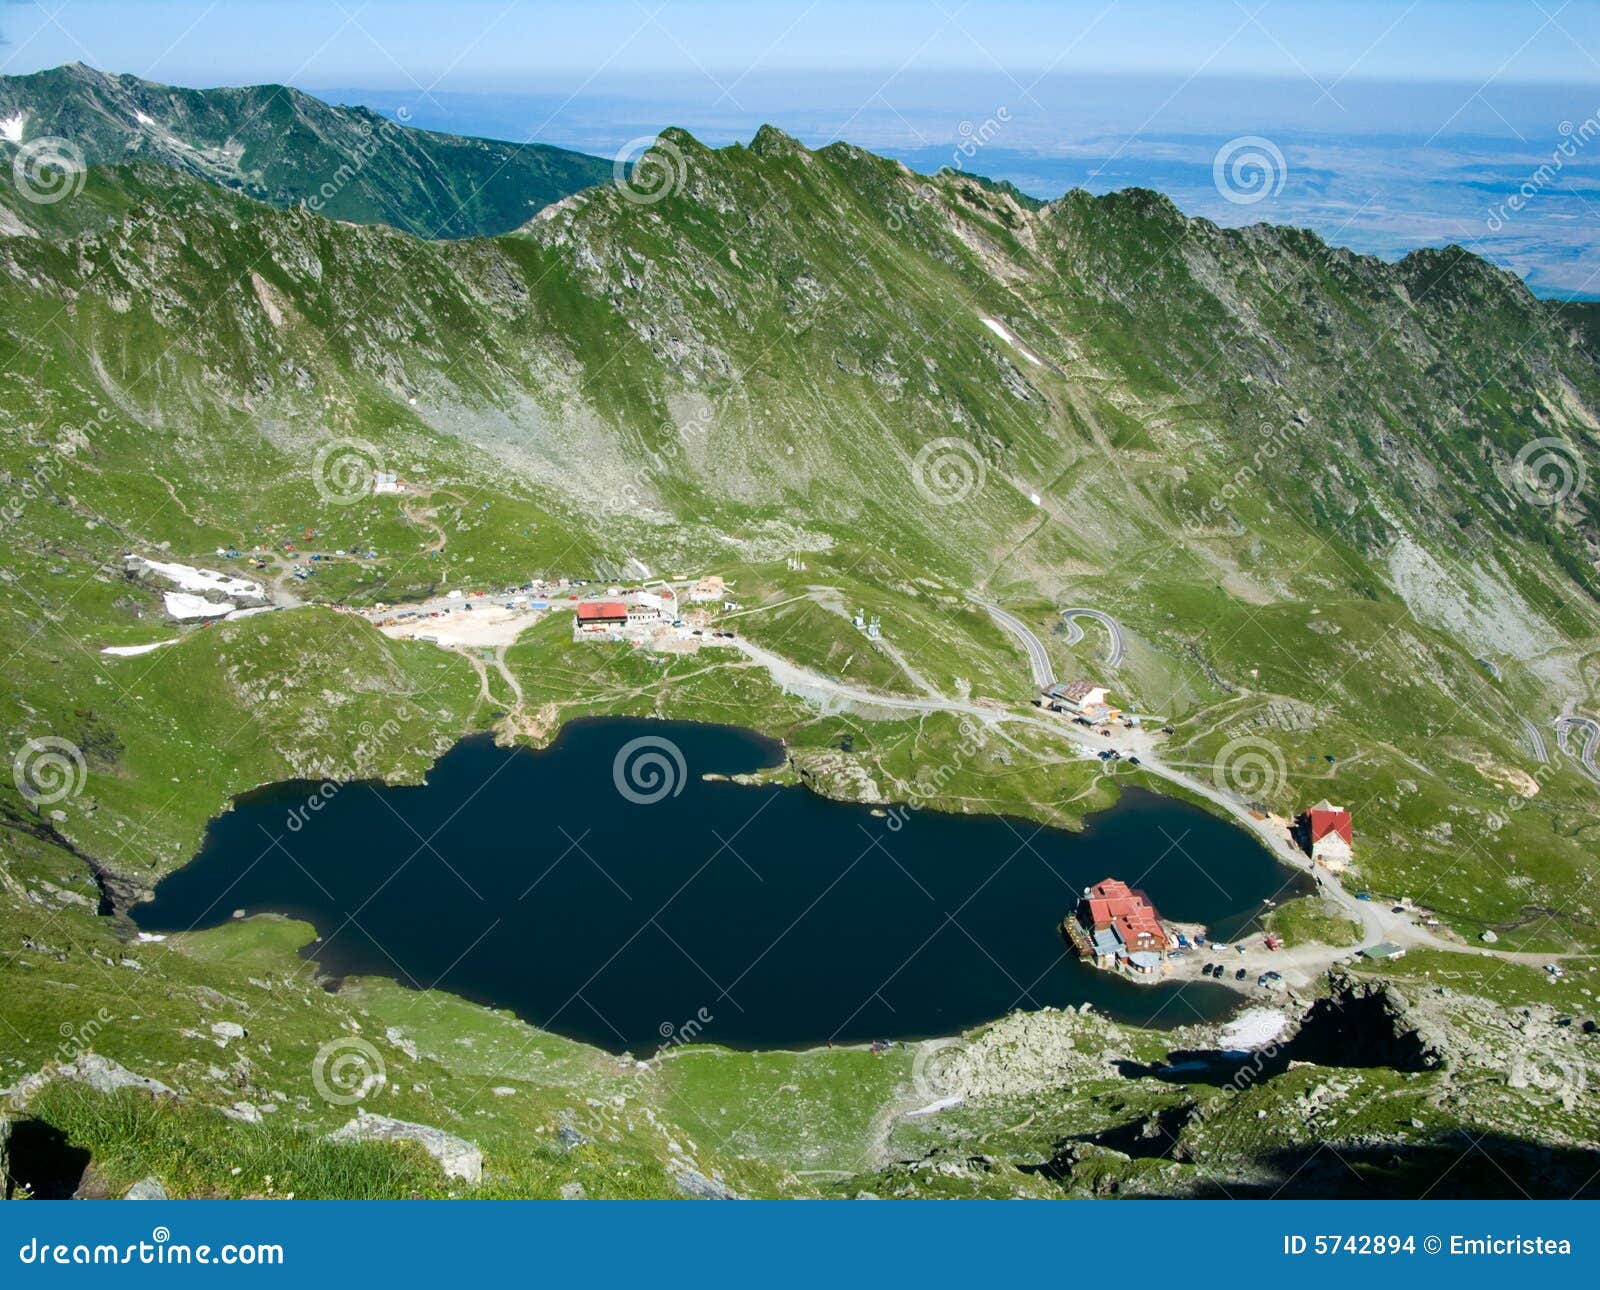 mountain lake balea in romania